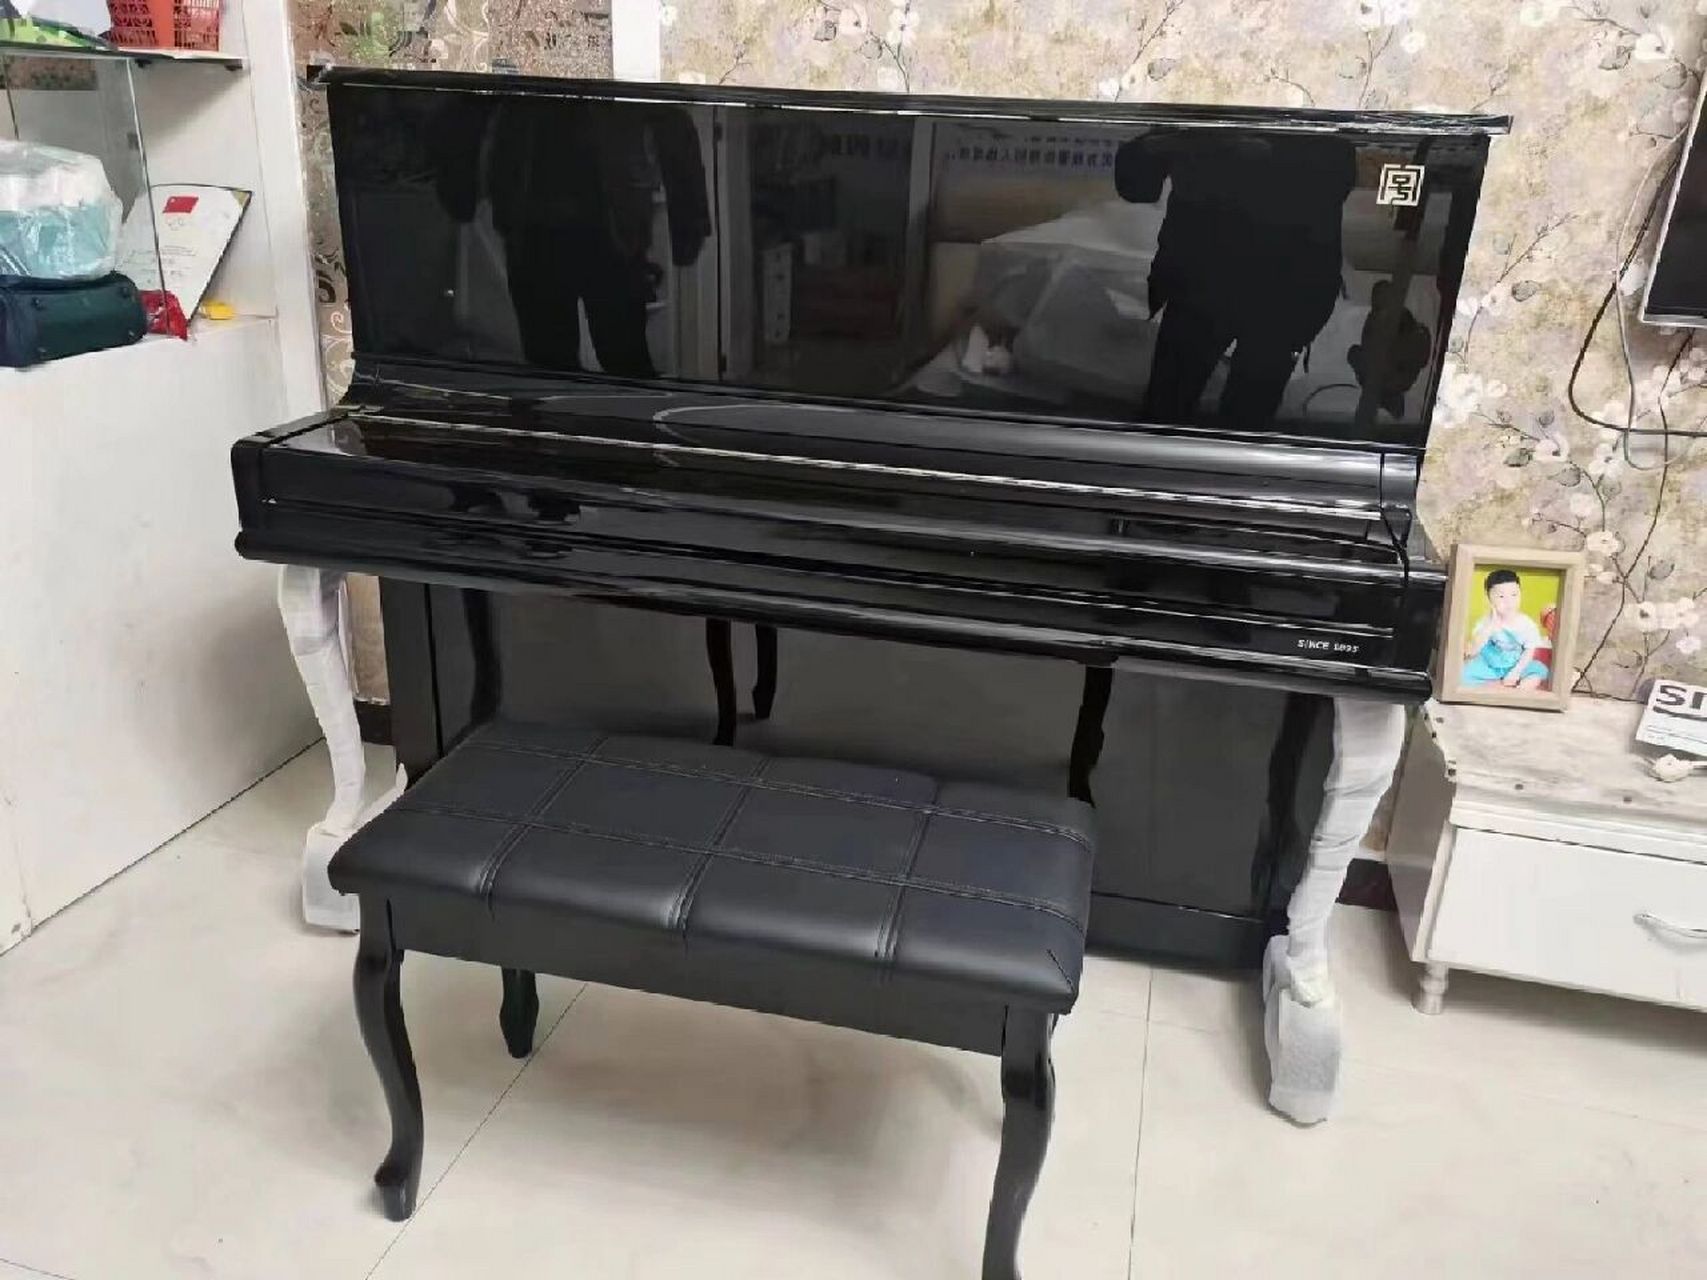 67上海施特劳斯钢琴se122一台,安全送达!